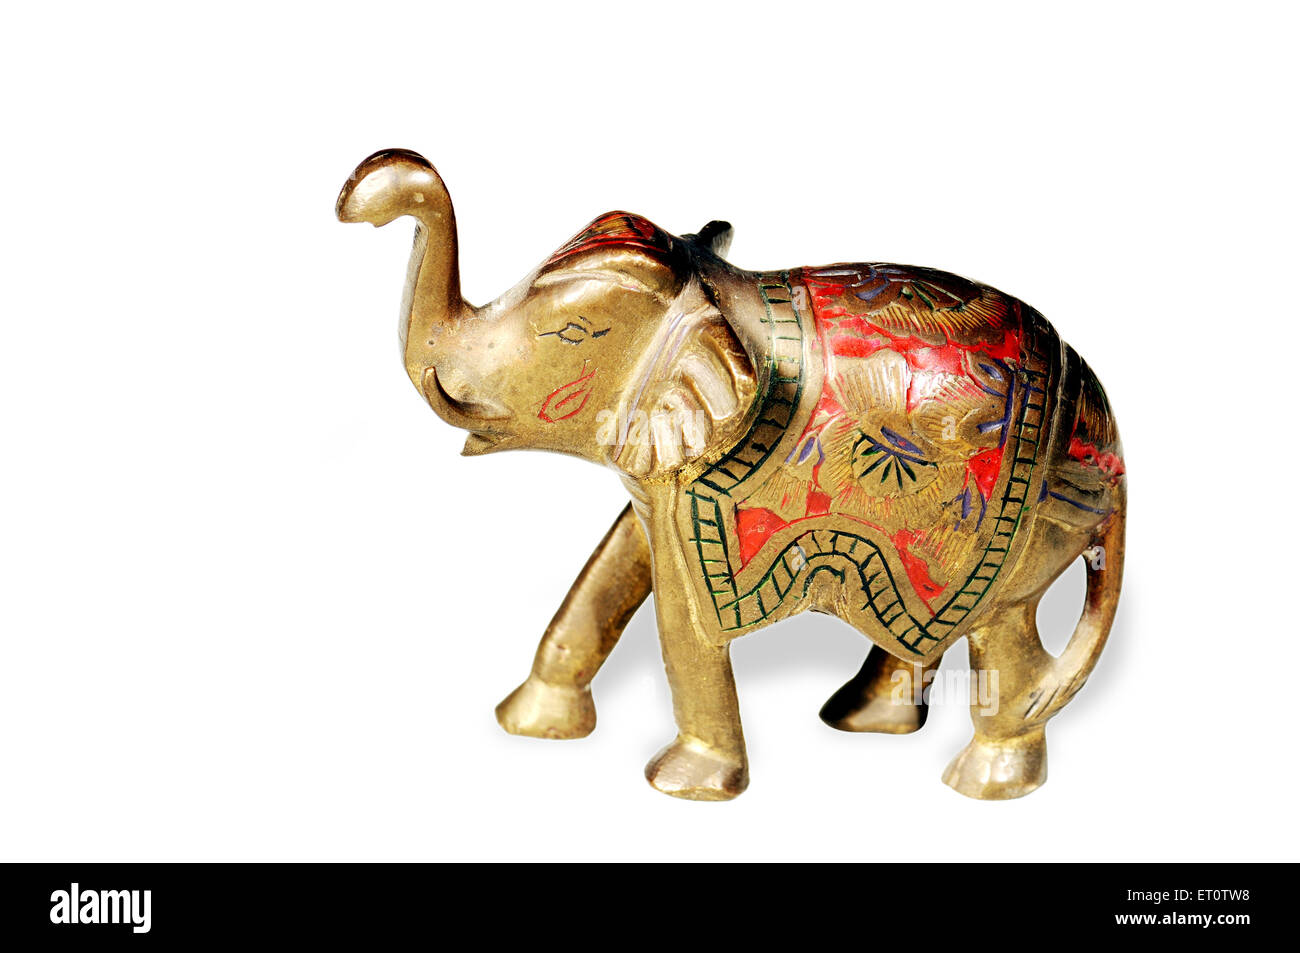 Handicraft ; elephant on white background ; India Stock Photo